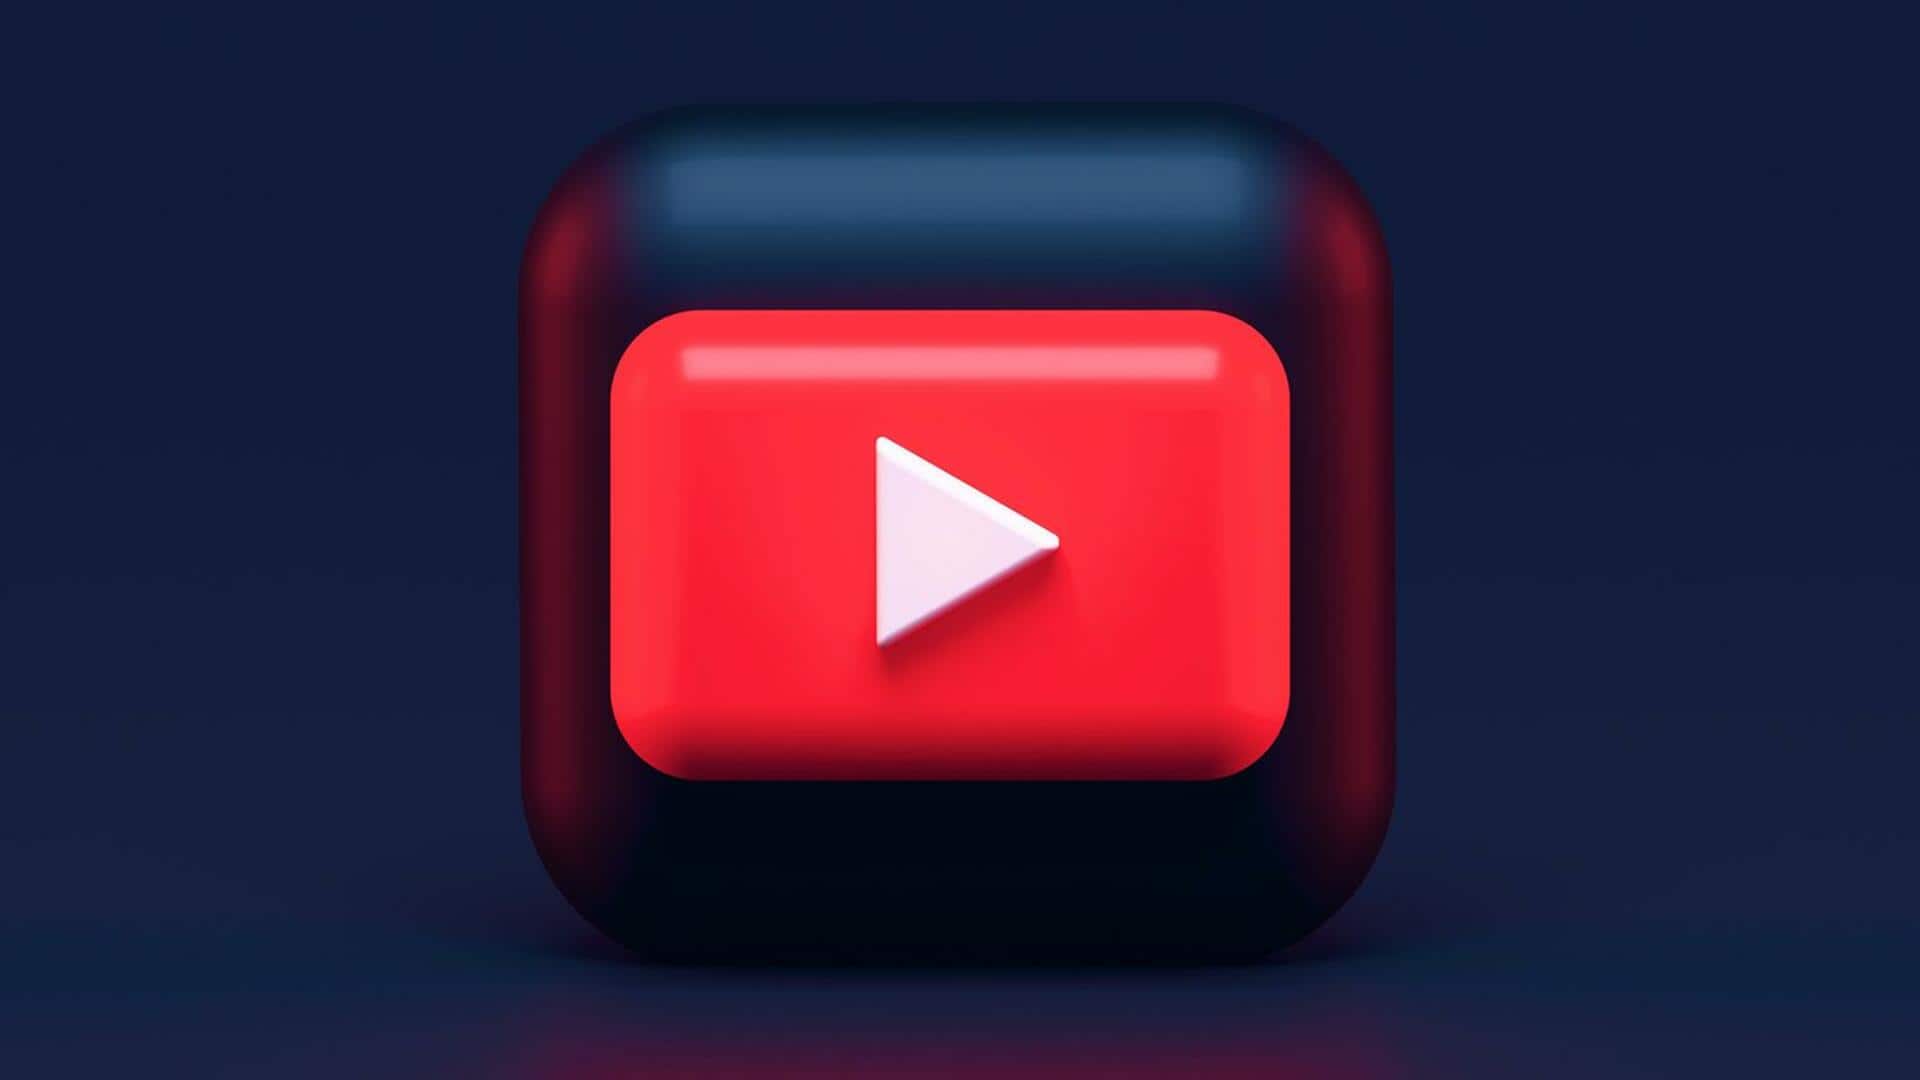 यूट्यूब पर मालवेयर लिंक वाले वीडियो की संख्या में 300 प्रतिशत तक हुई बढ़ोतरी- रिपोर्ट